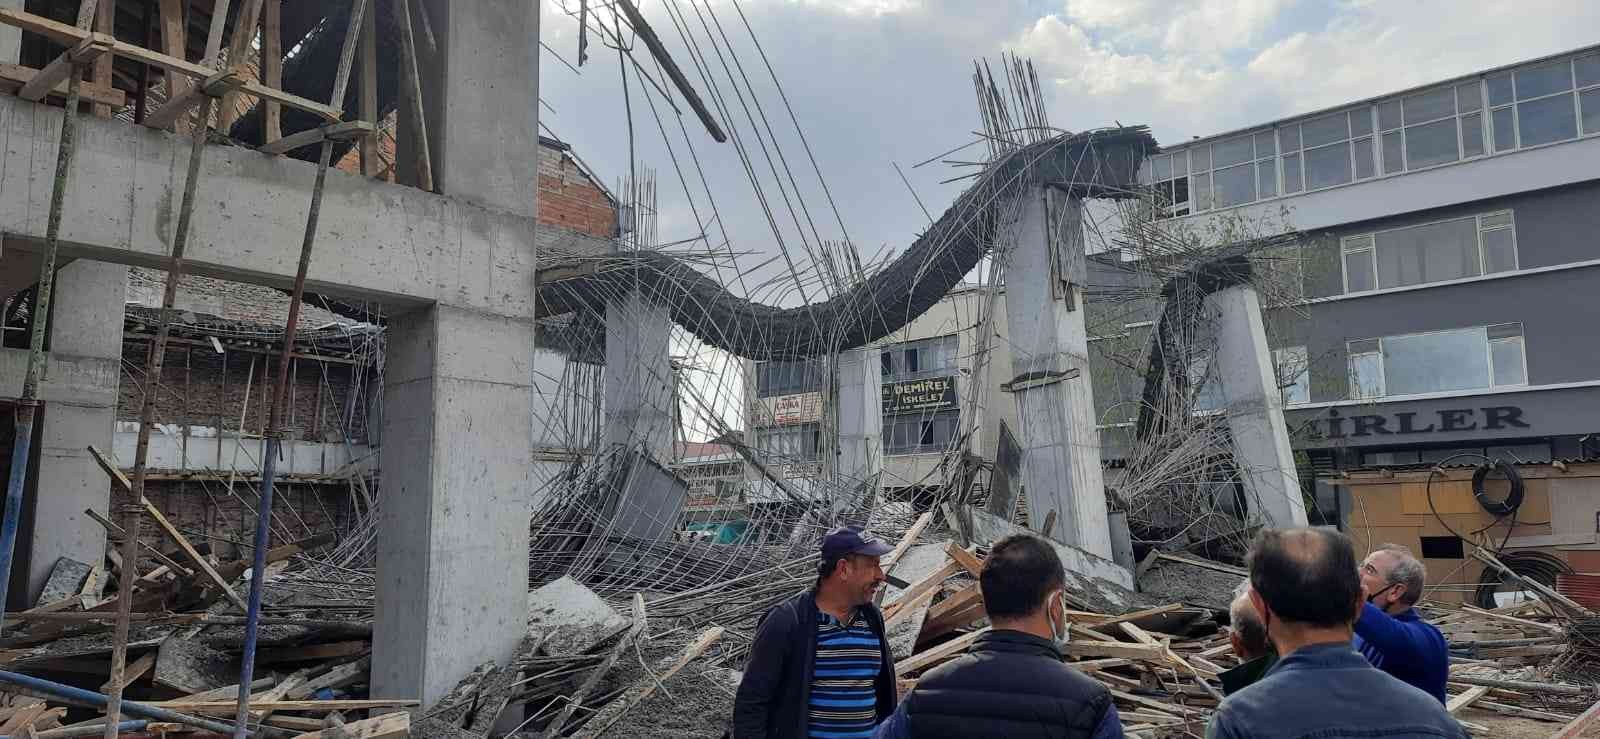 Başkent’te inşaatta göçük: 3 yaralı #ankara